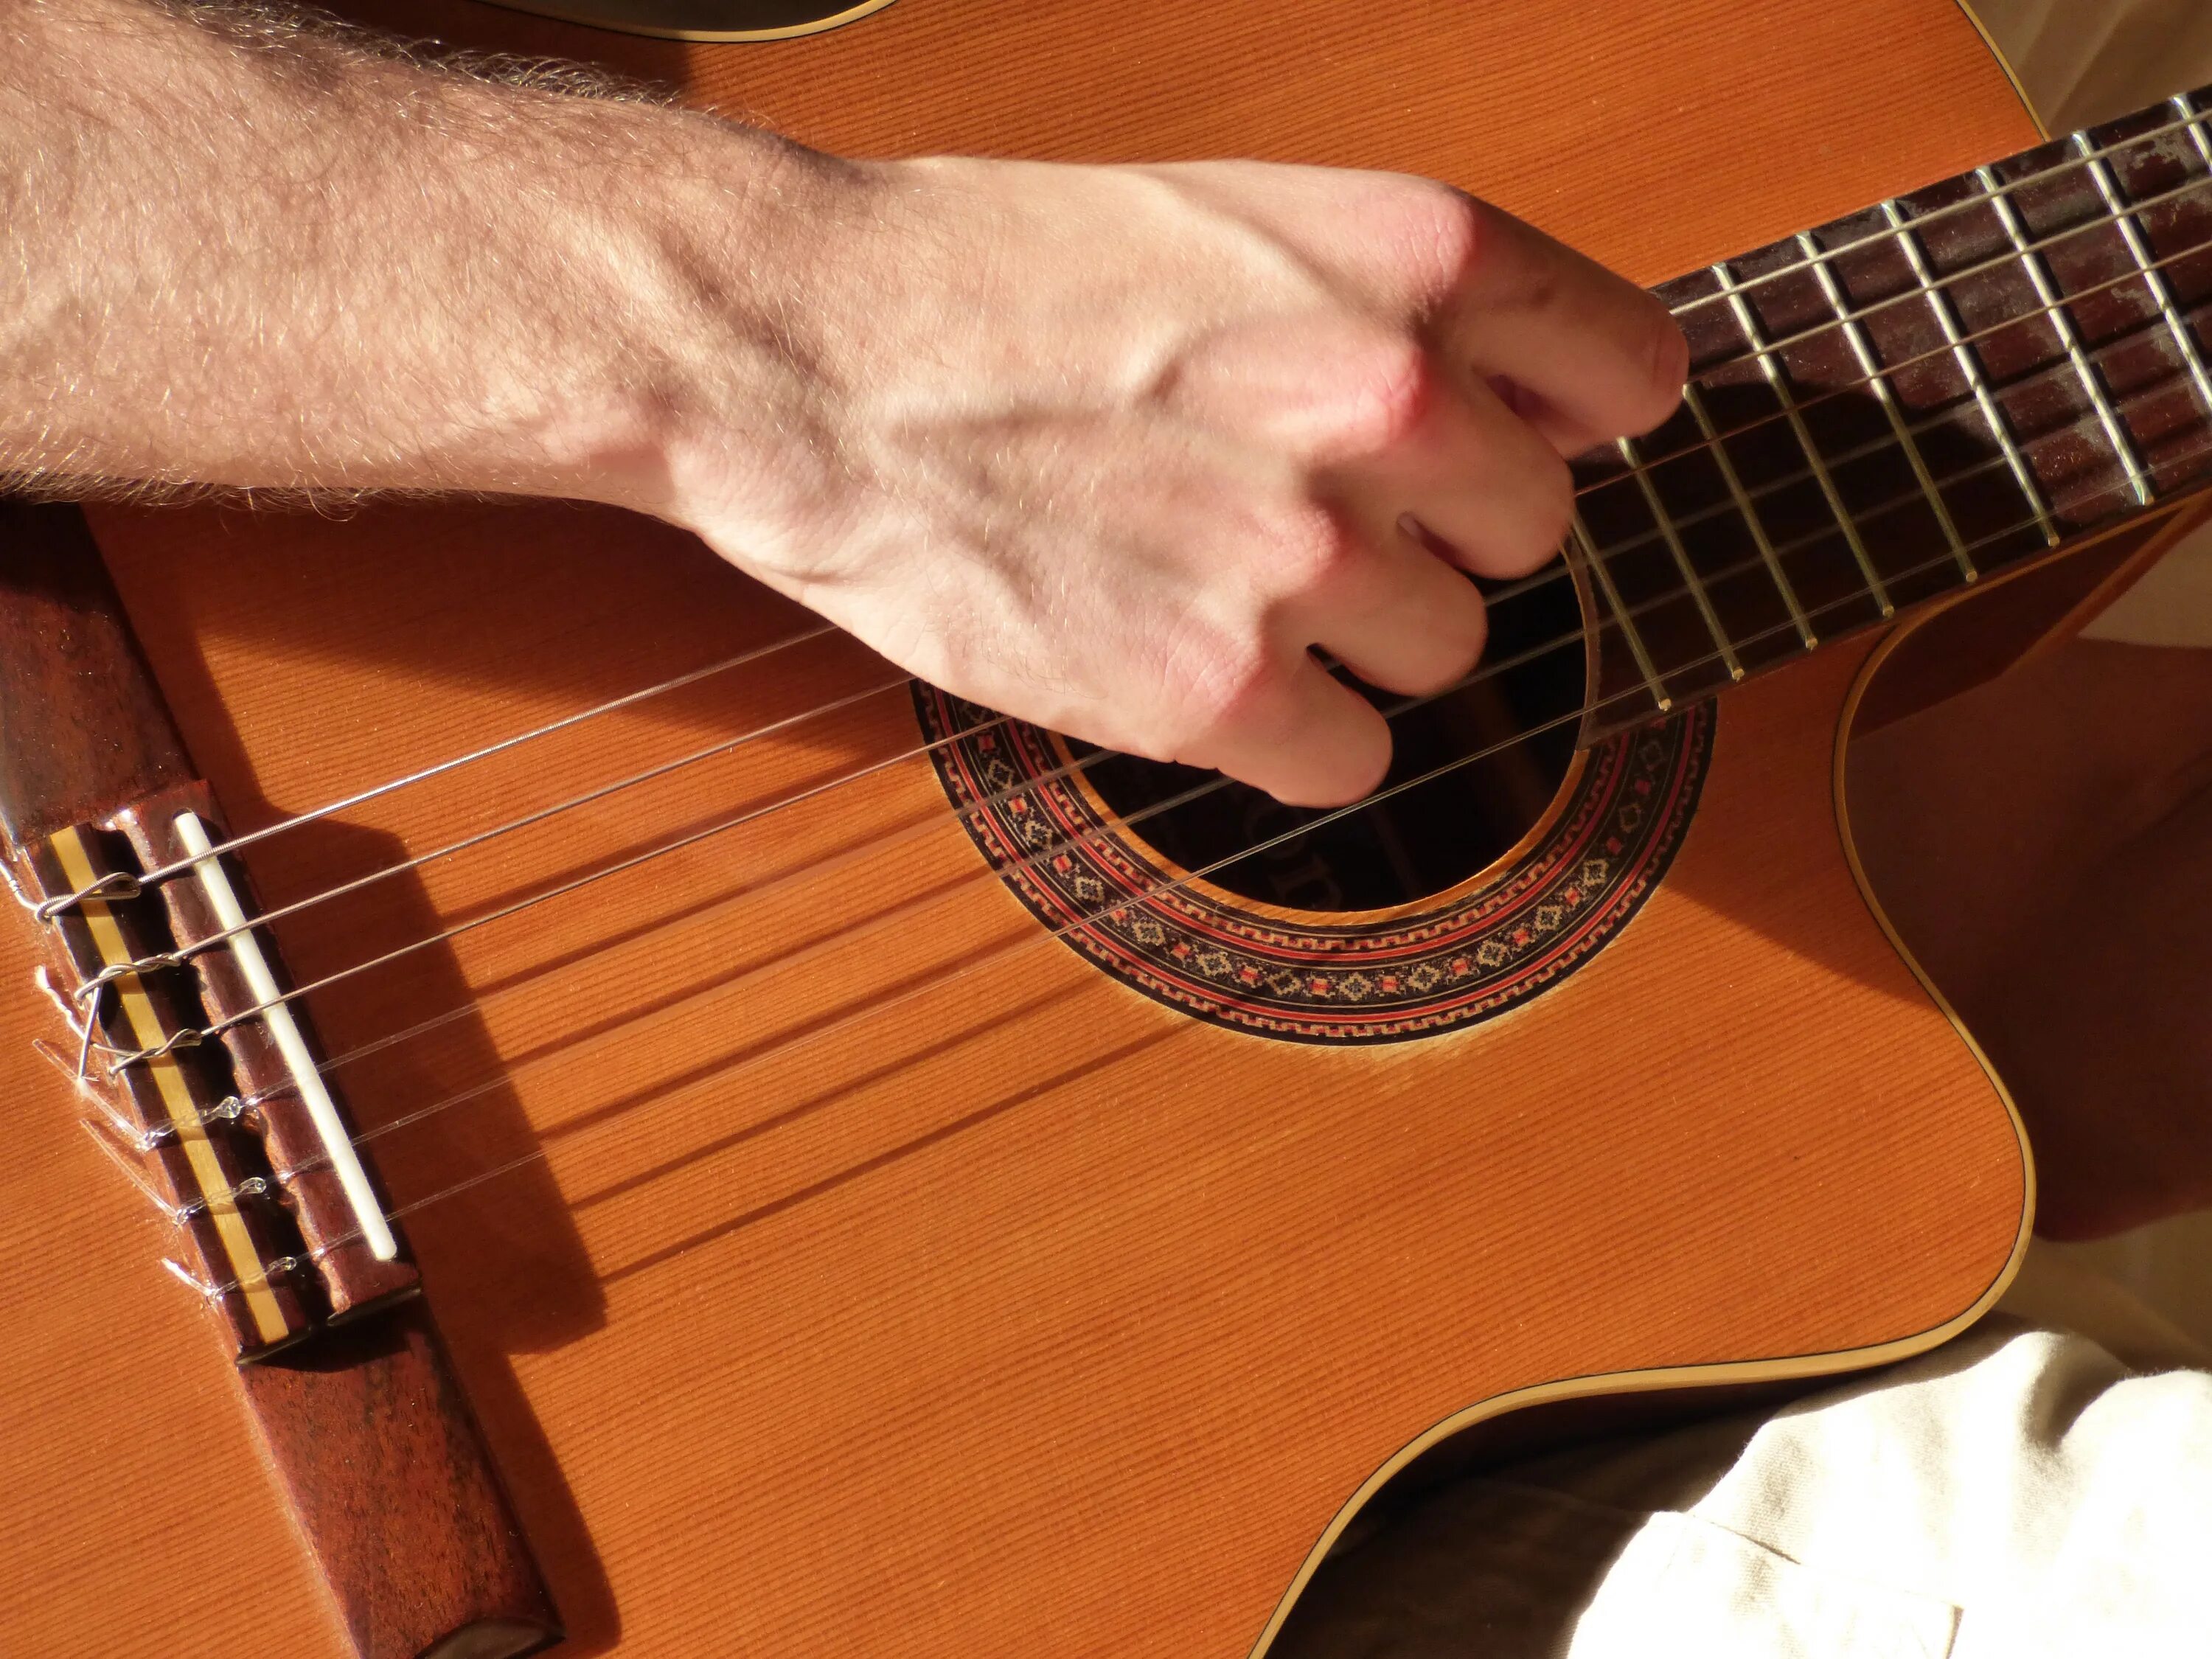 Звон струн. Гитарные приемы. Гитара картина. Авторская песня инструменты. Фото гитары 6 струнной.